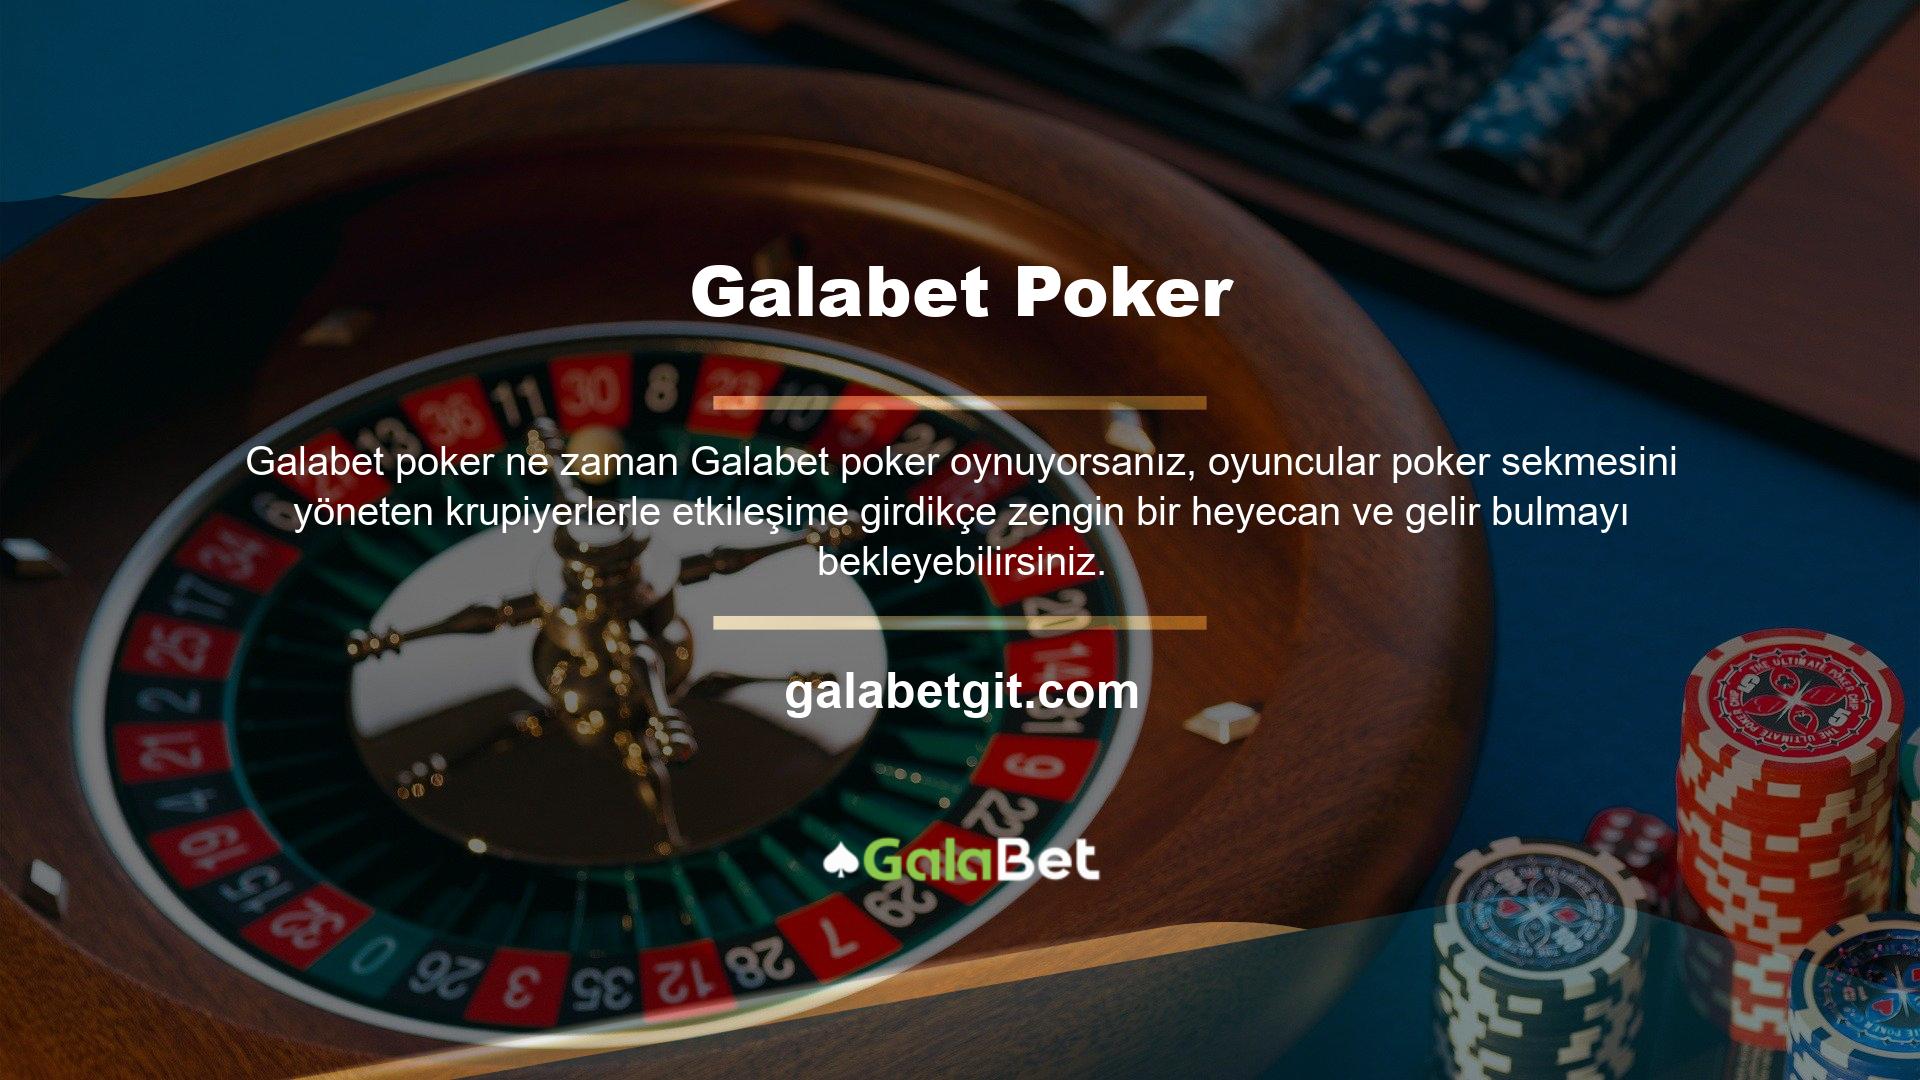 Galabet firması, oyunu gerçek dünyaya getirmek ve poker müşterilerine sunmak için Galabet poker oyunuyla bir anlaşma yaptı